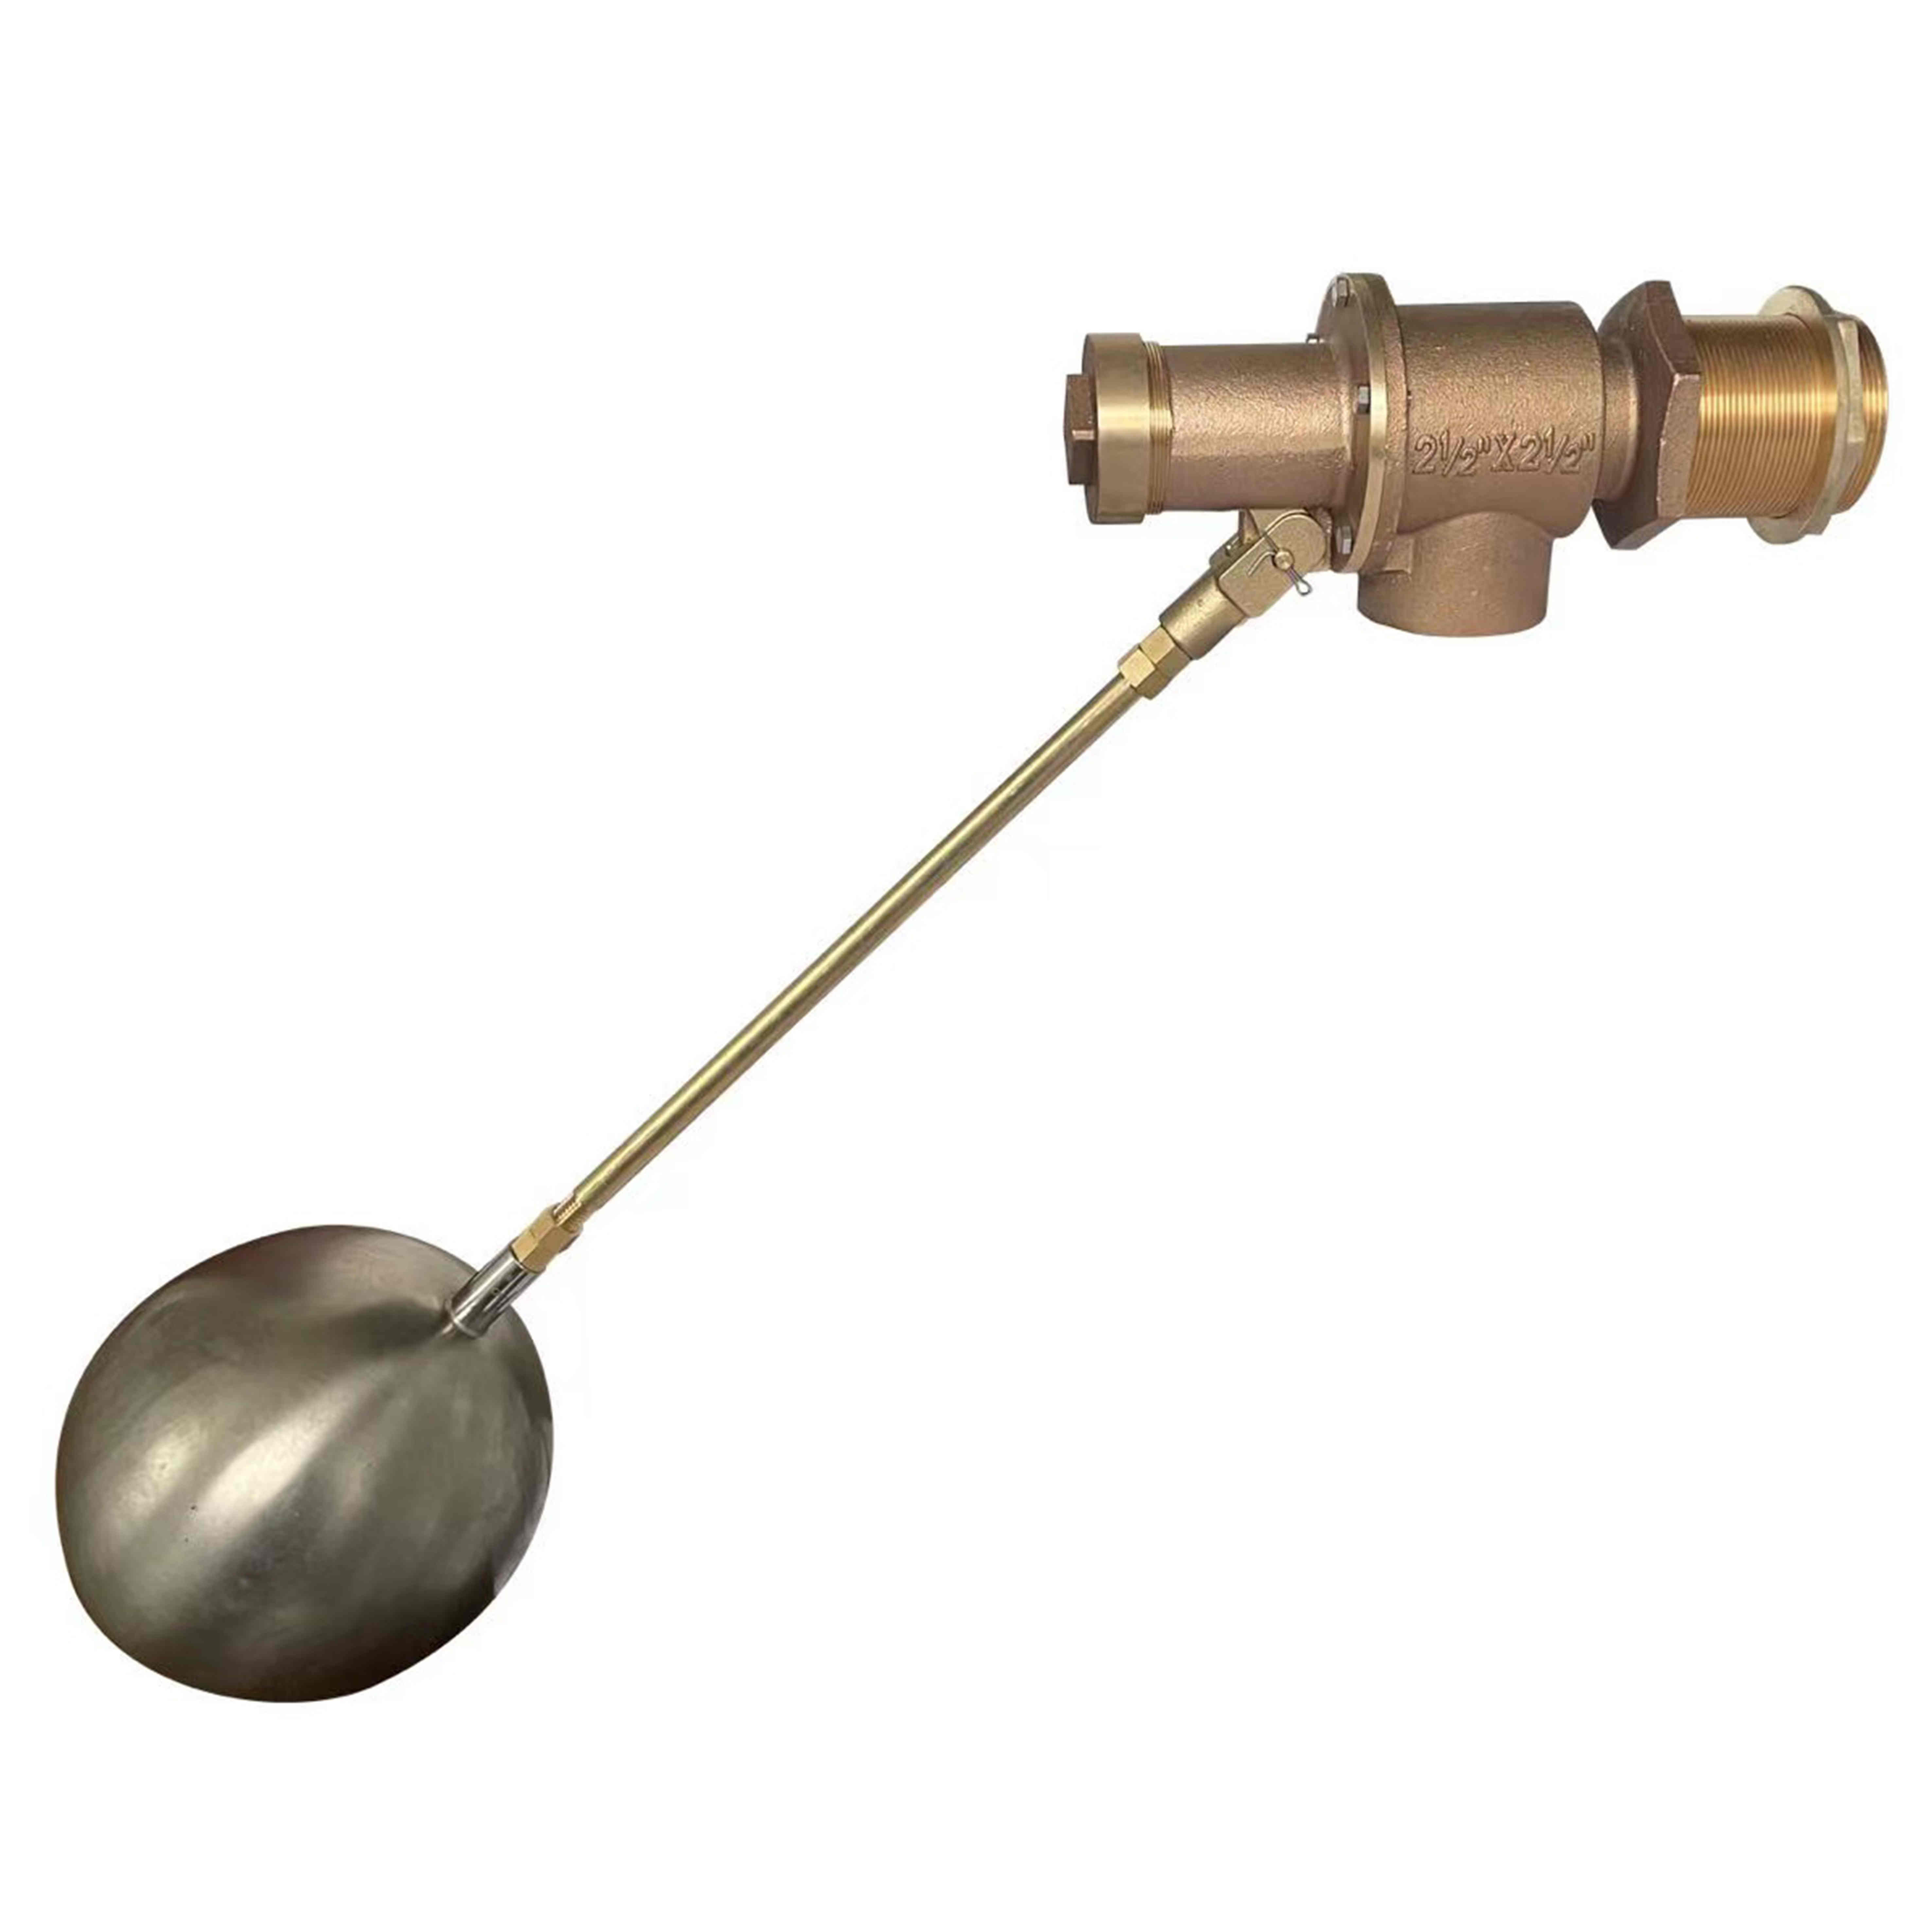 Bronze valve